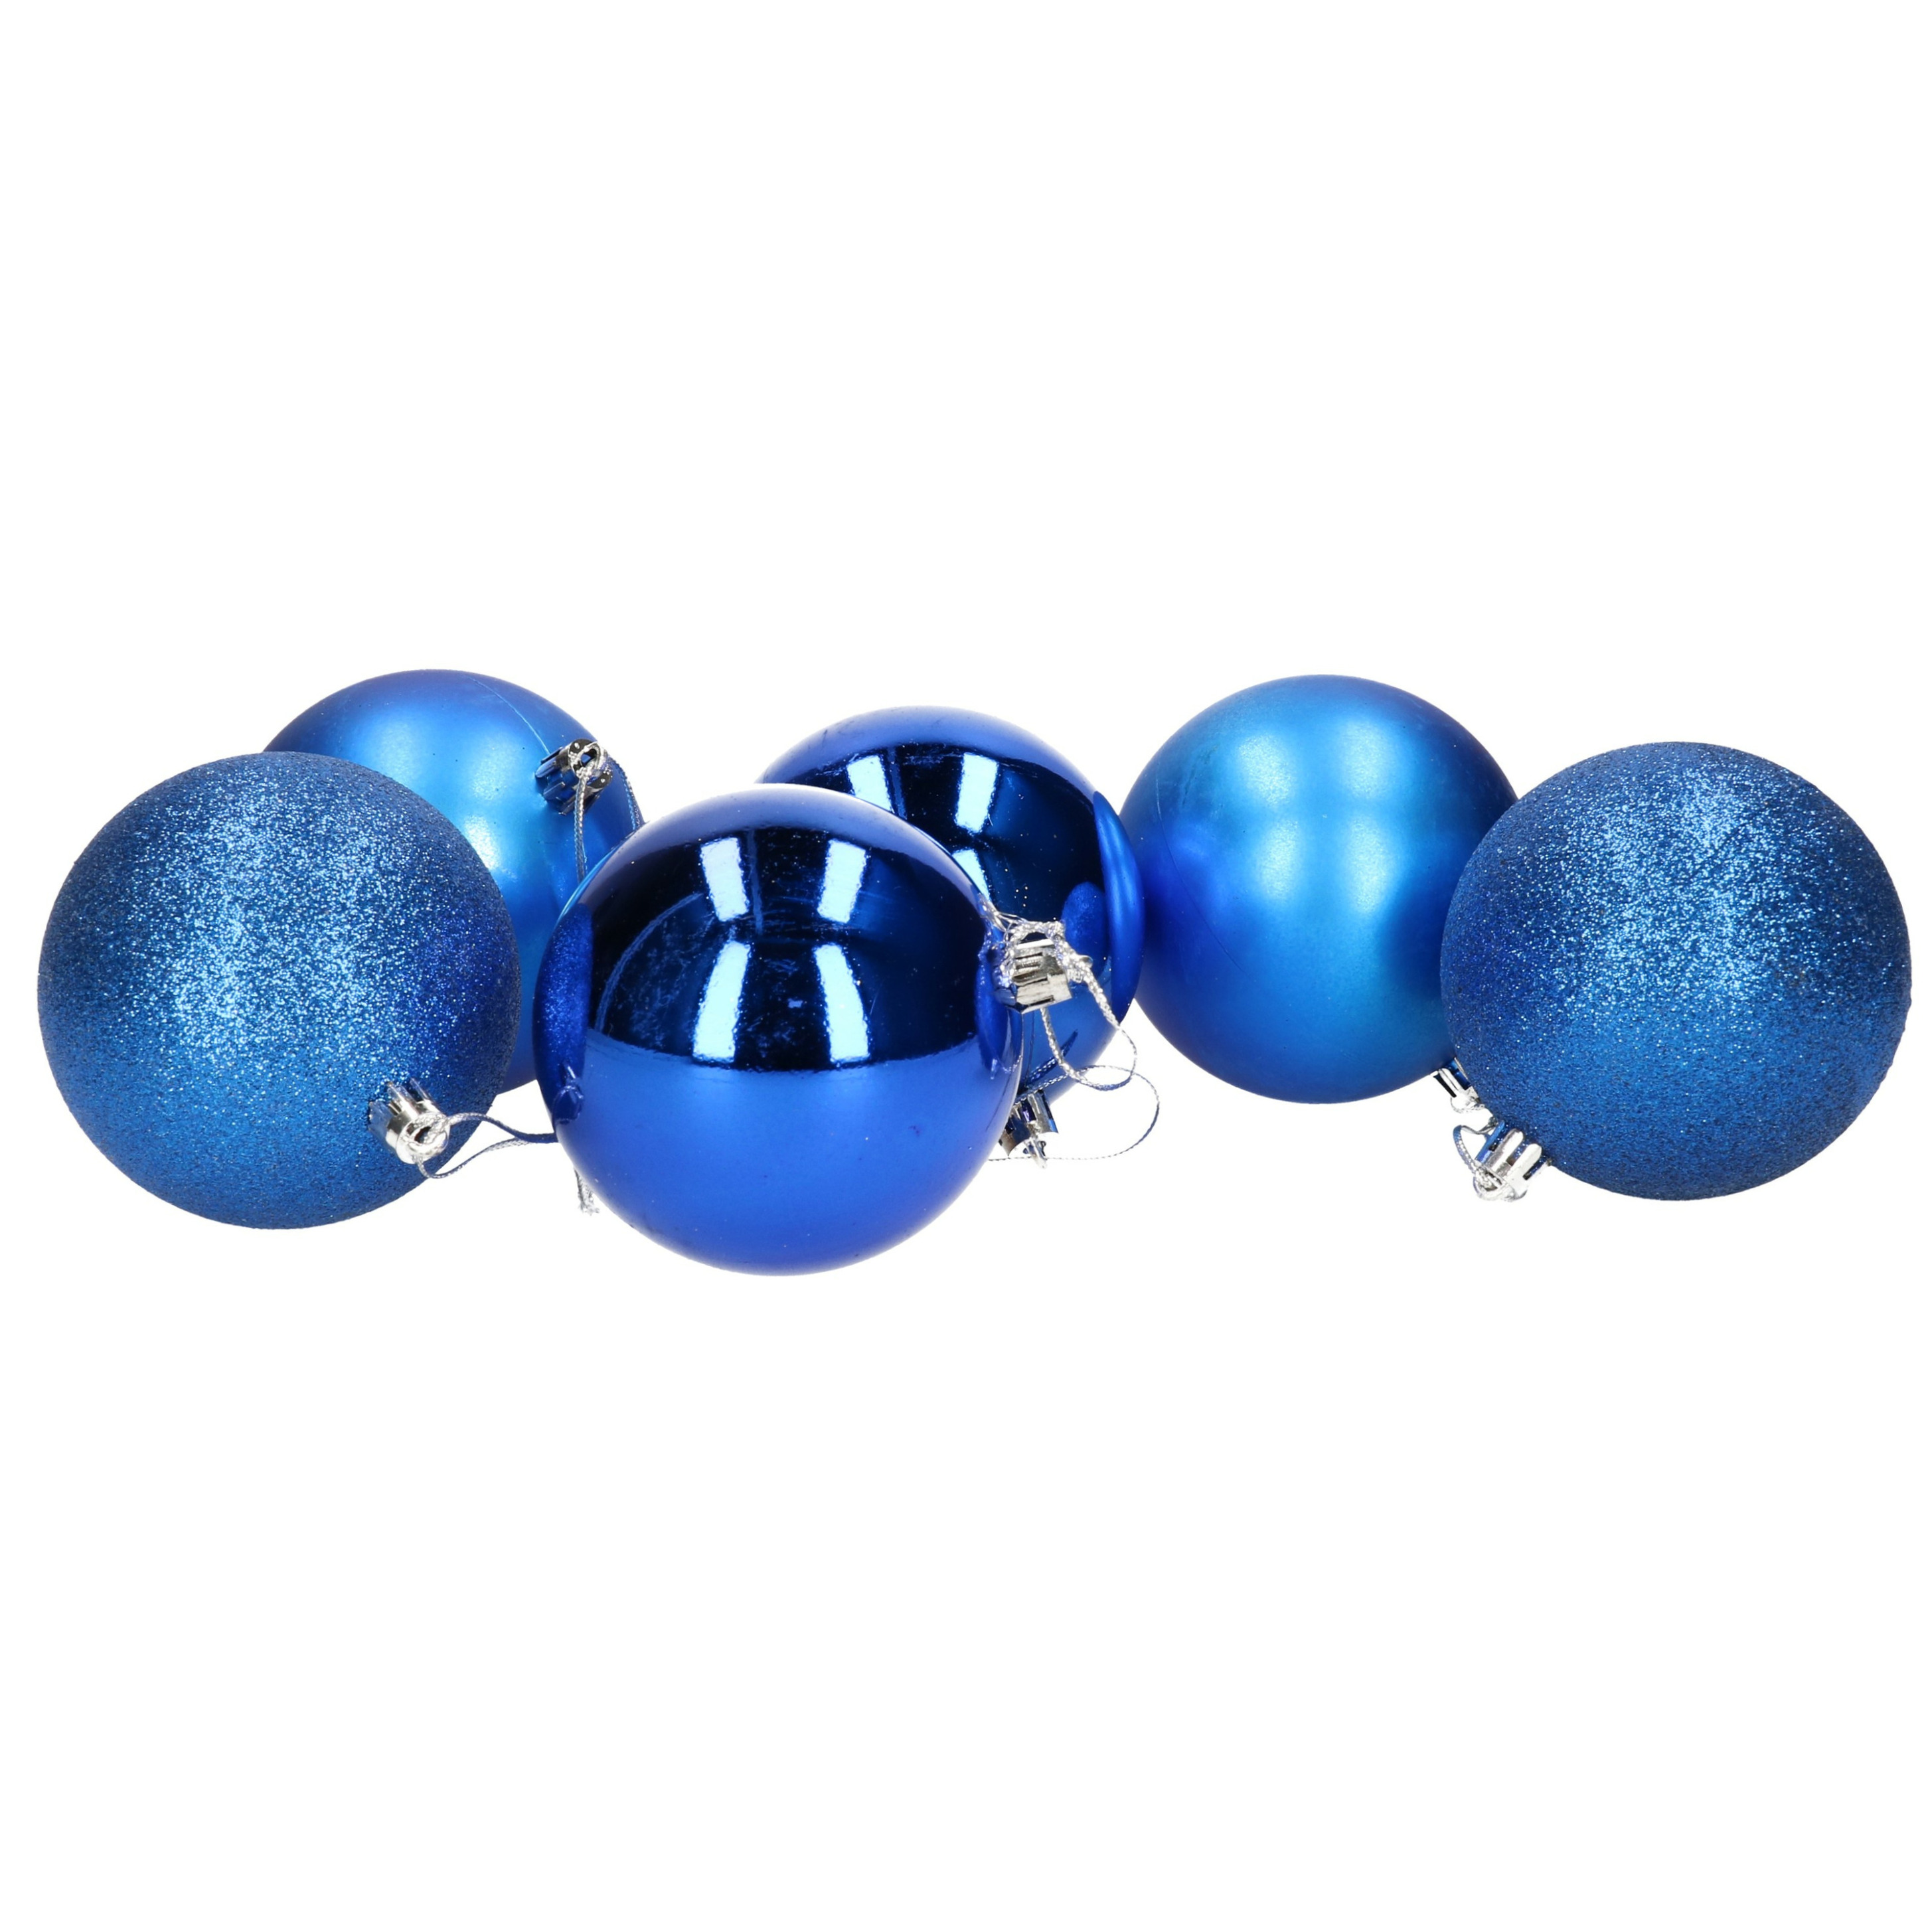 6x stuks kerstballen blauw mix van mat-glans-glitter kunststof 8 cm